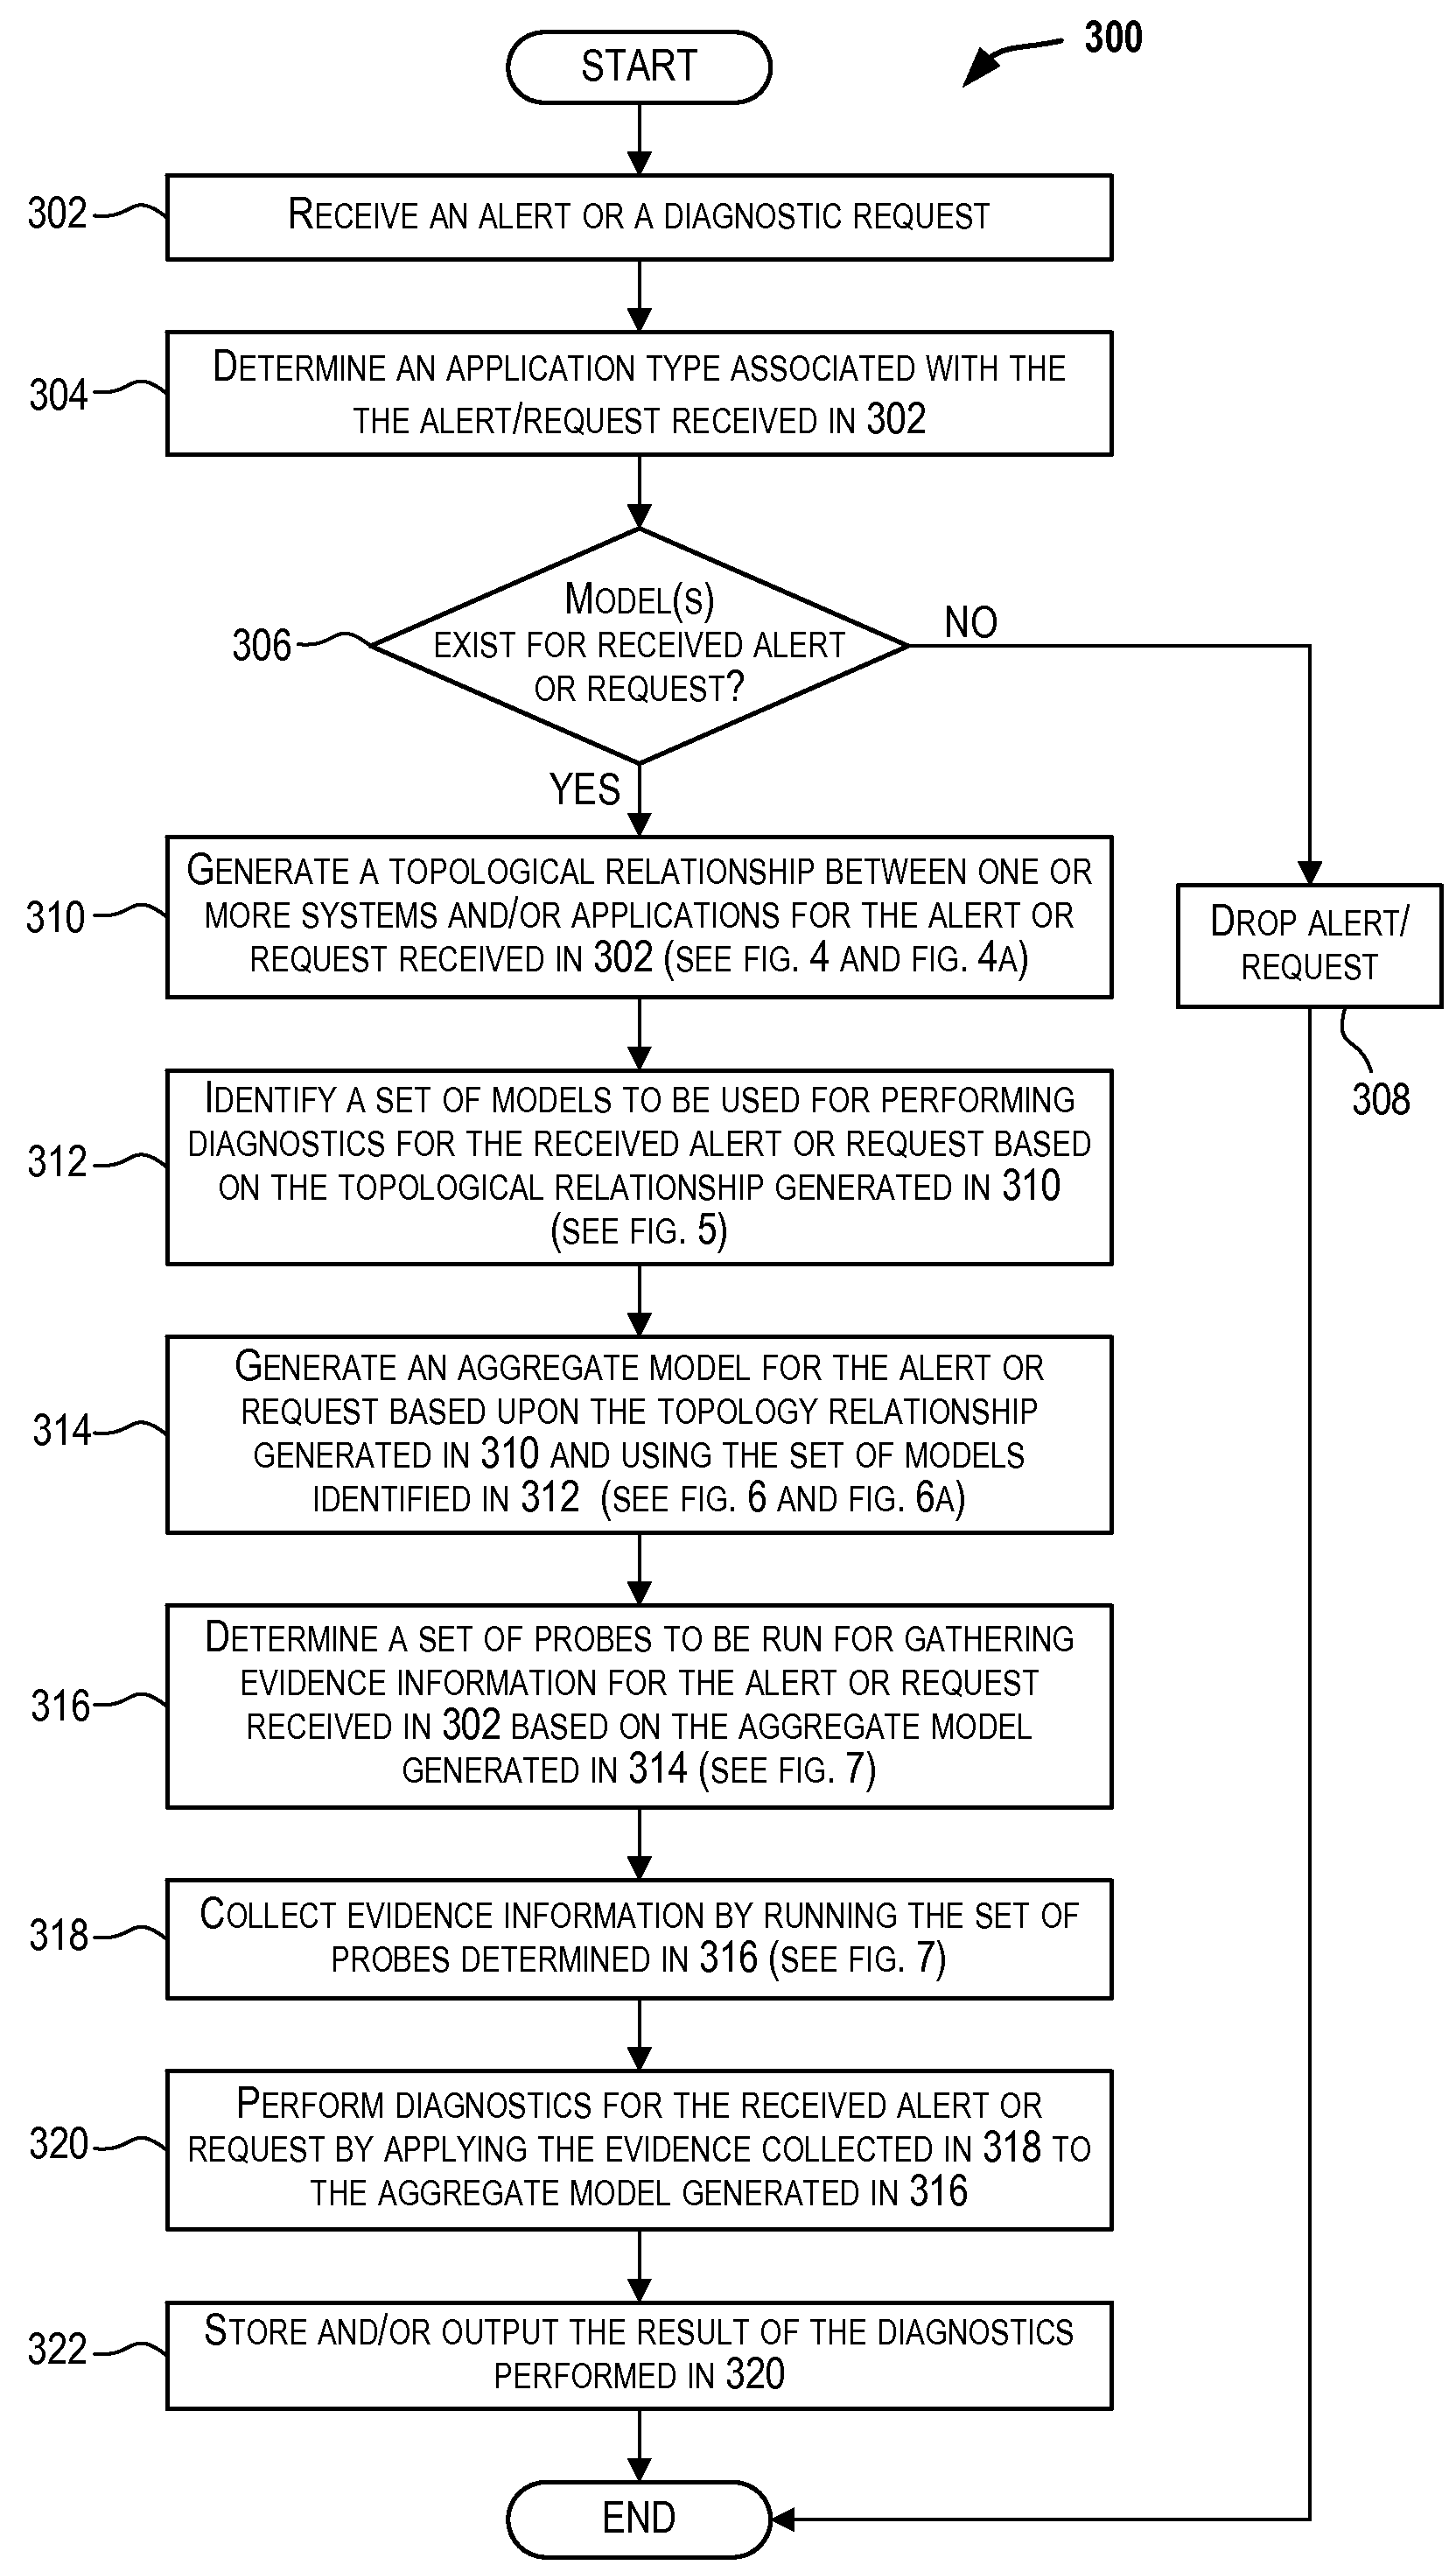 Techniques for determining models for performing diagnostics